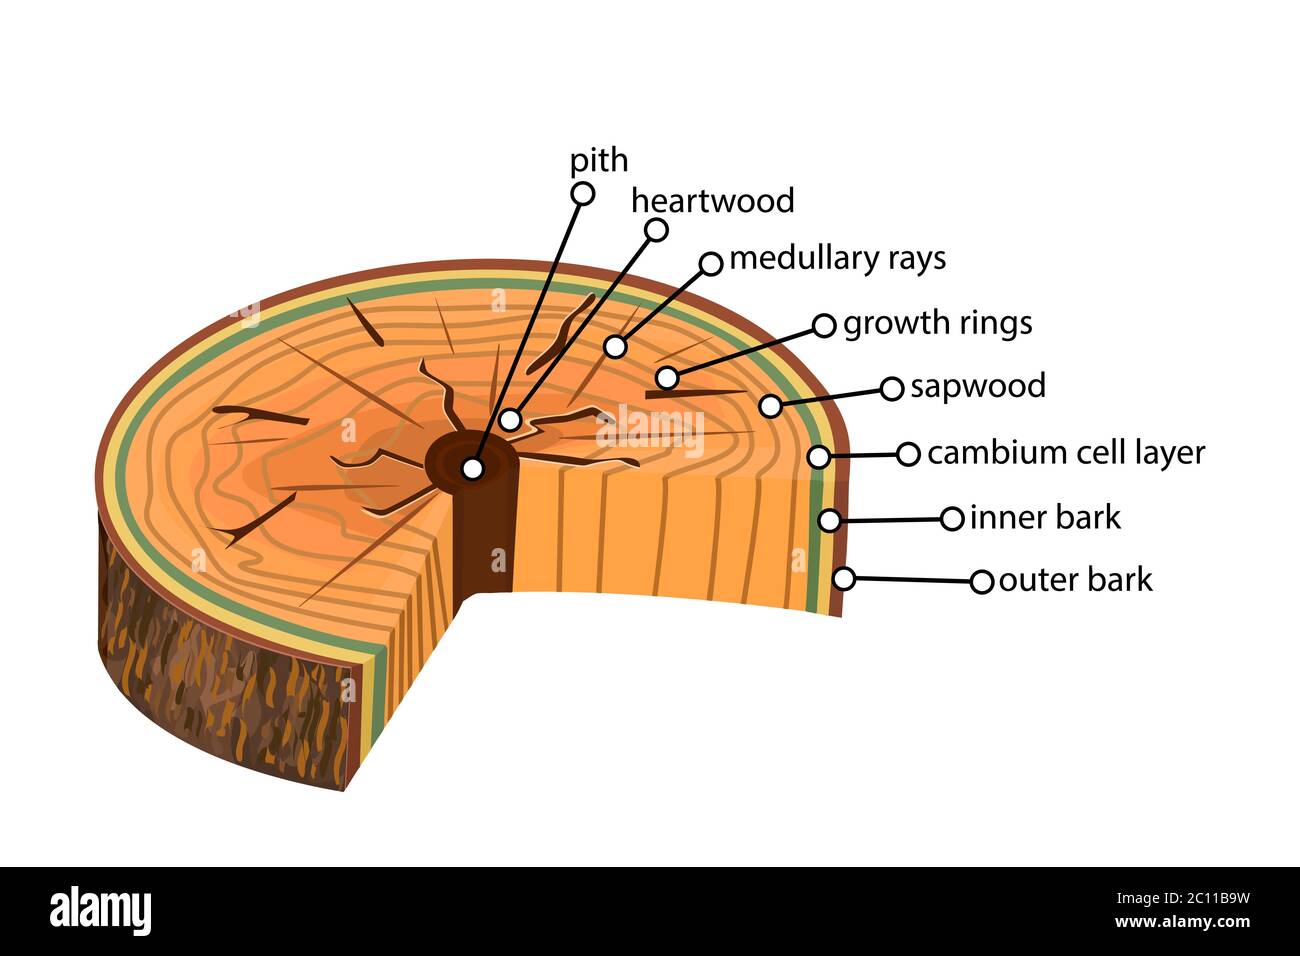 Anatomie d'un arbre. Structure de la coupe des couches de l'arborescence en coupe transversale. Schéma des couches de tronc d'arbre. Coupe transversale de tiges ligneuses. Vecteur de brut Illustration de Vecteur